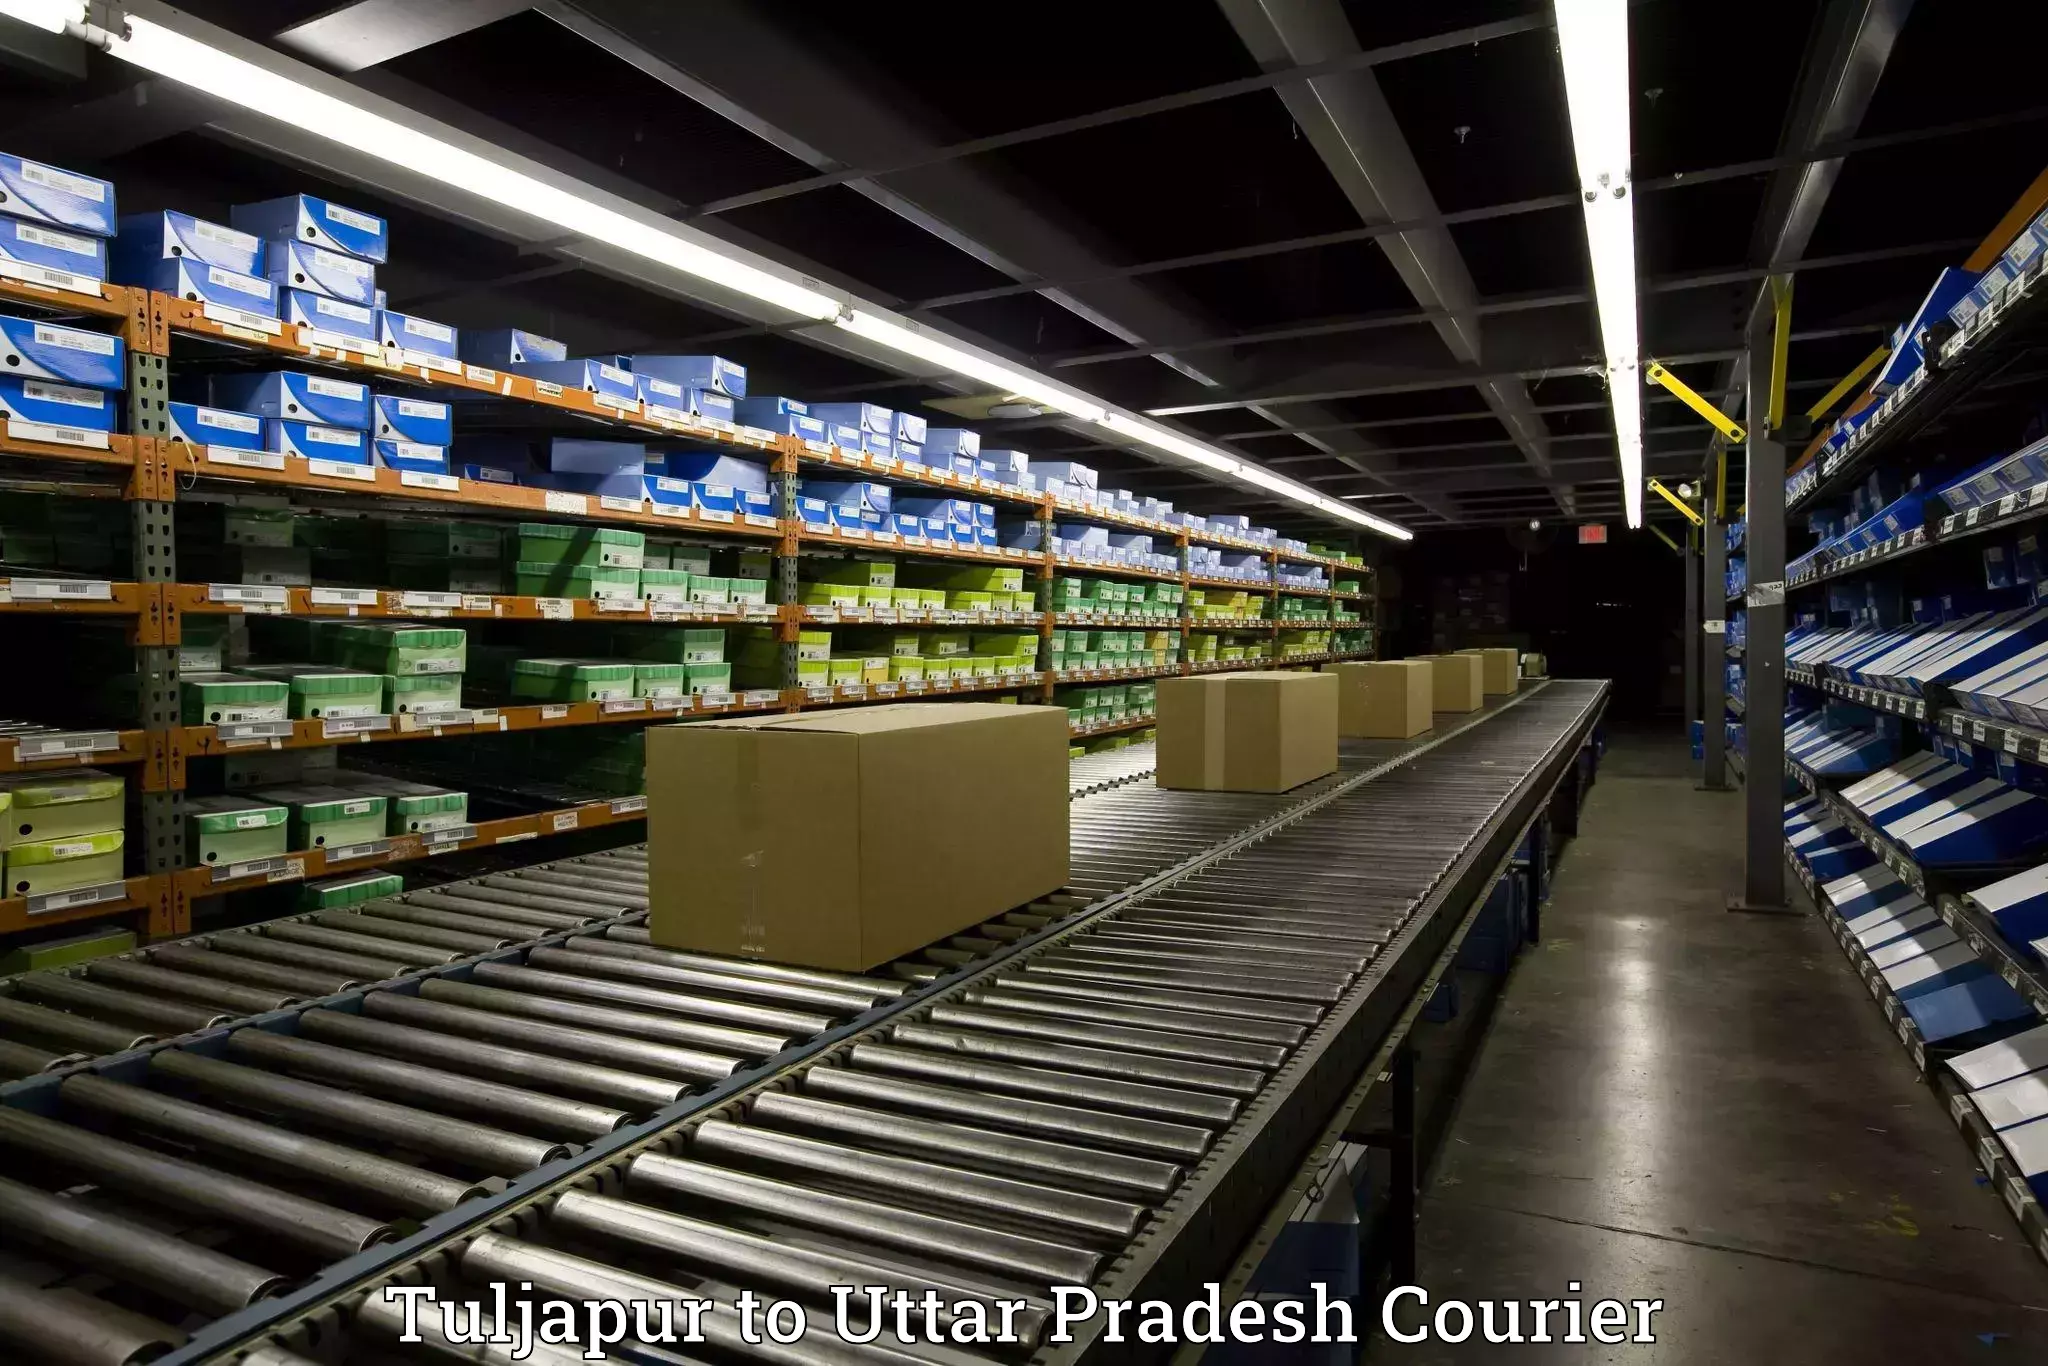 Moving and storage services Tuljapur to Uttar Pradesh